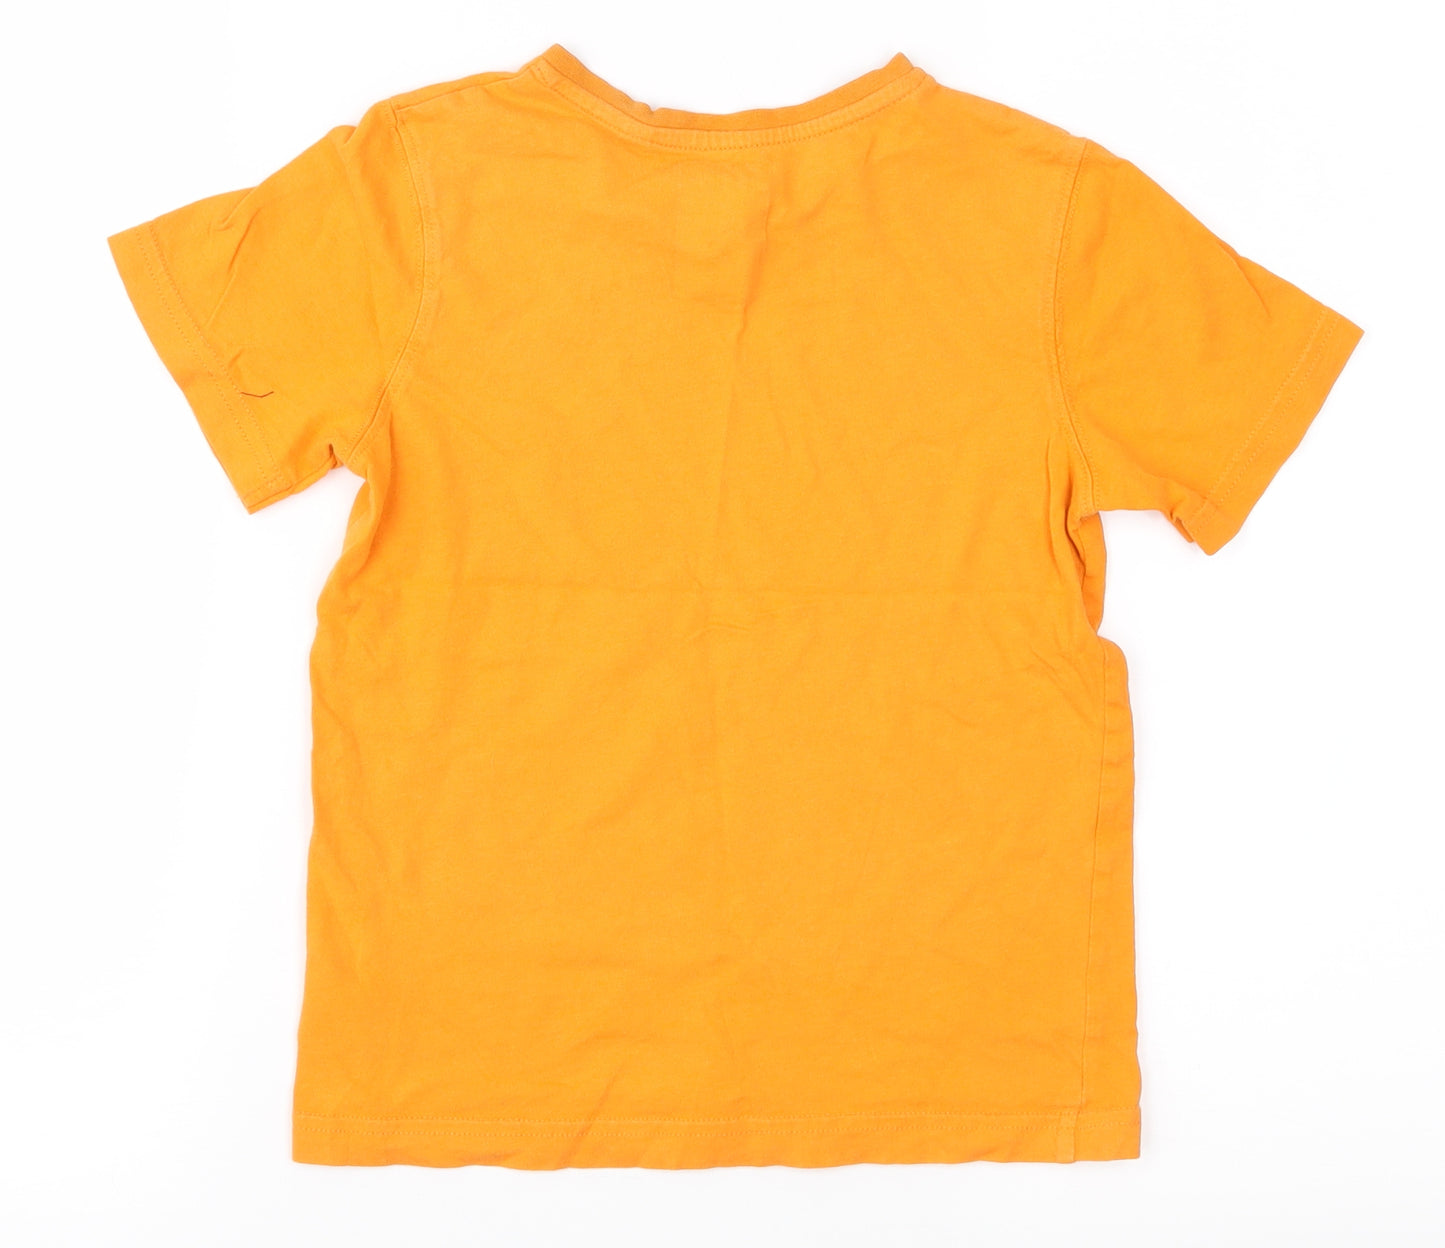 Palomino Boys Orange   Basic T-Shirt Size 6-7 Years